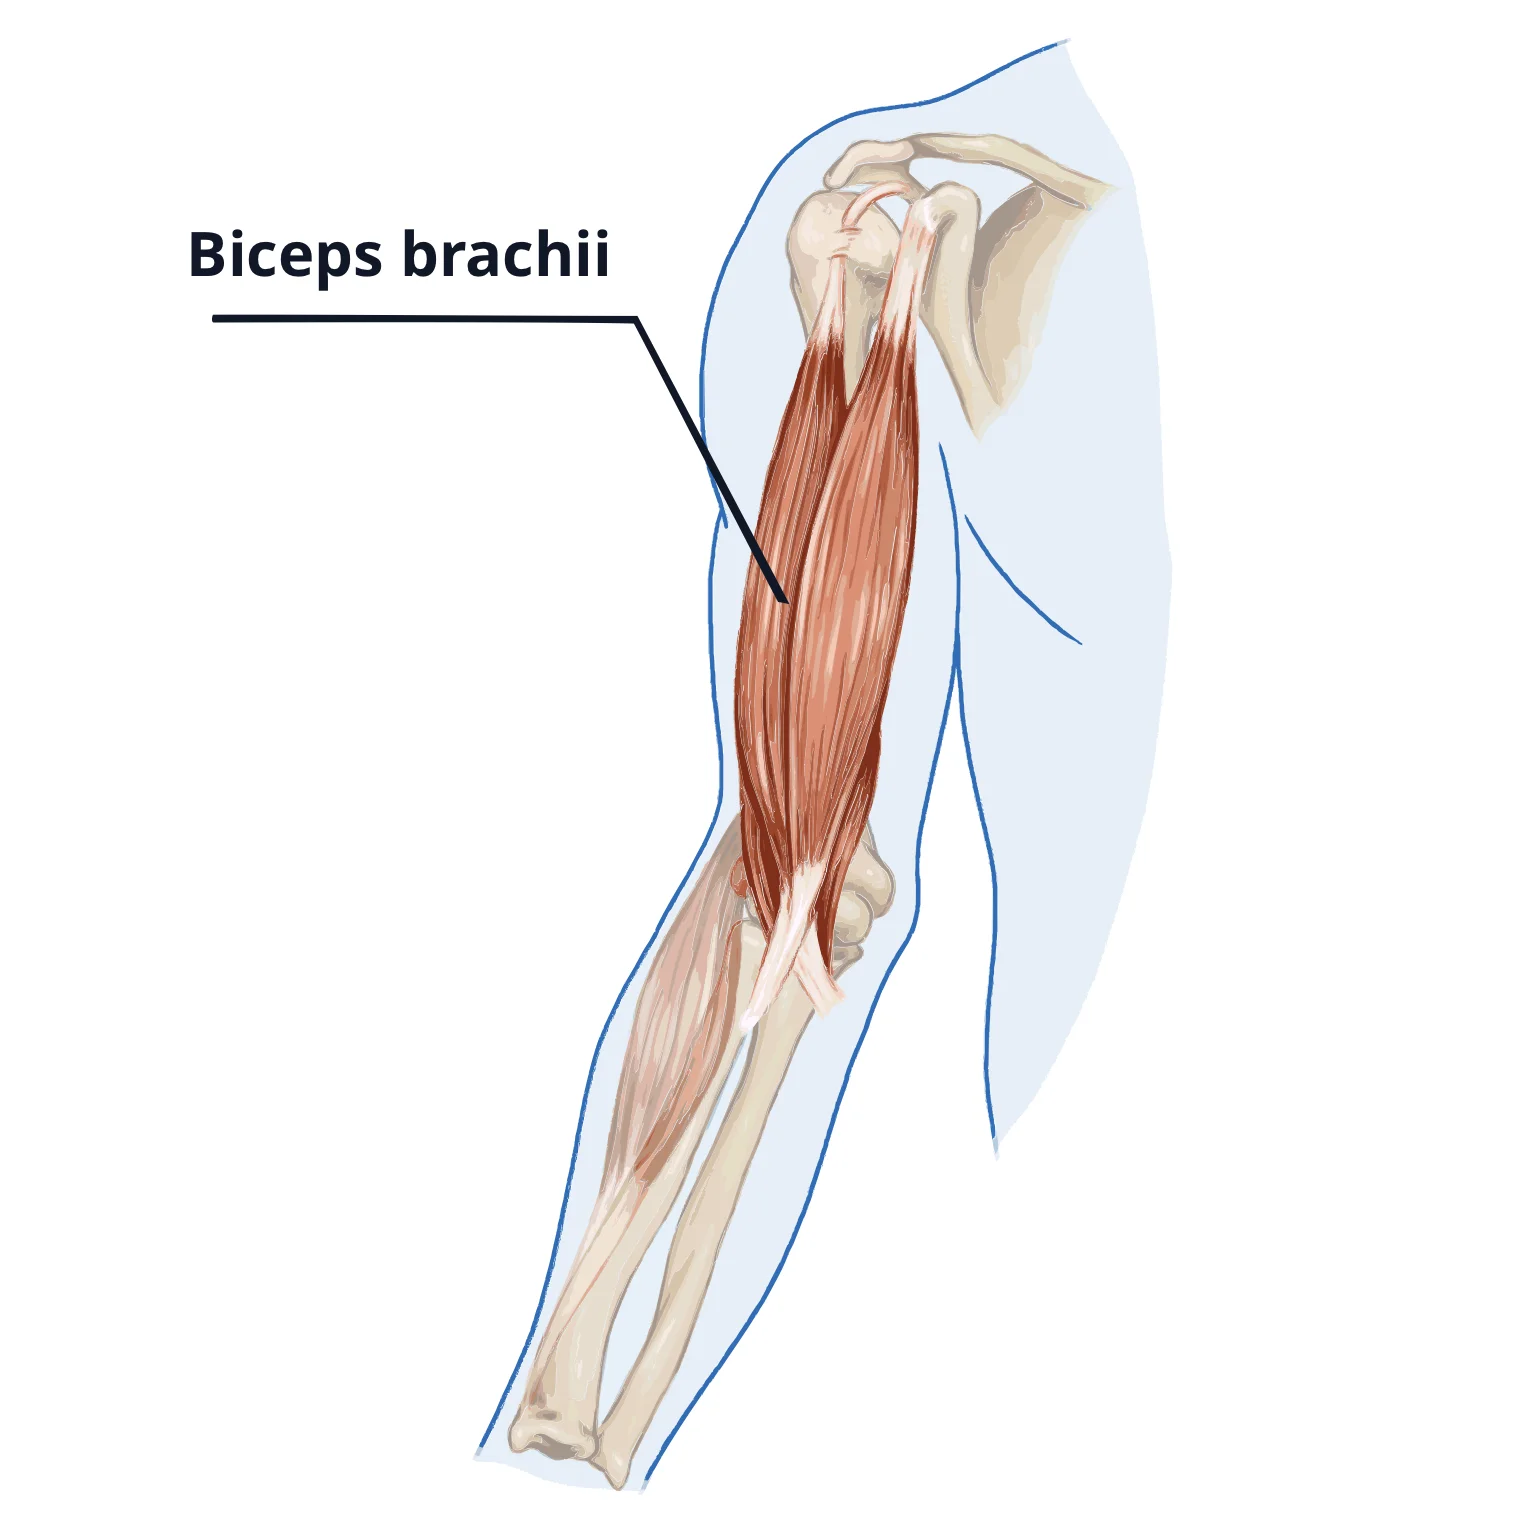 The biceps brachii